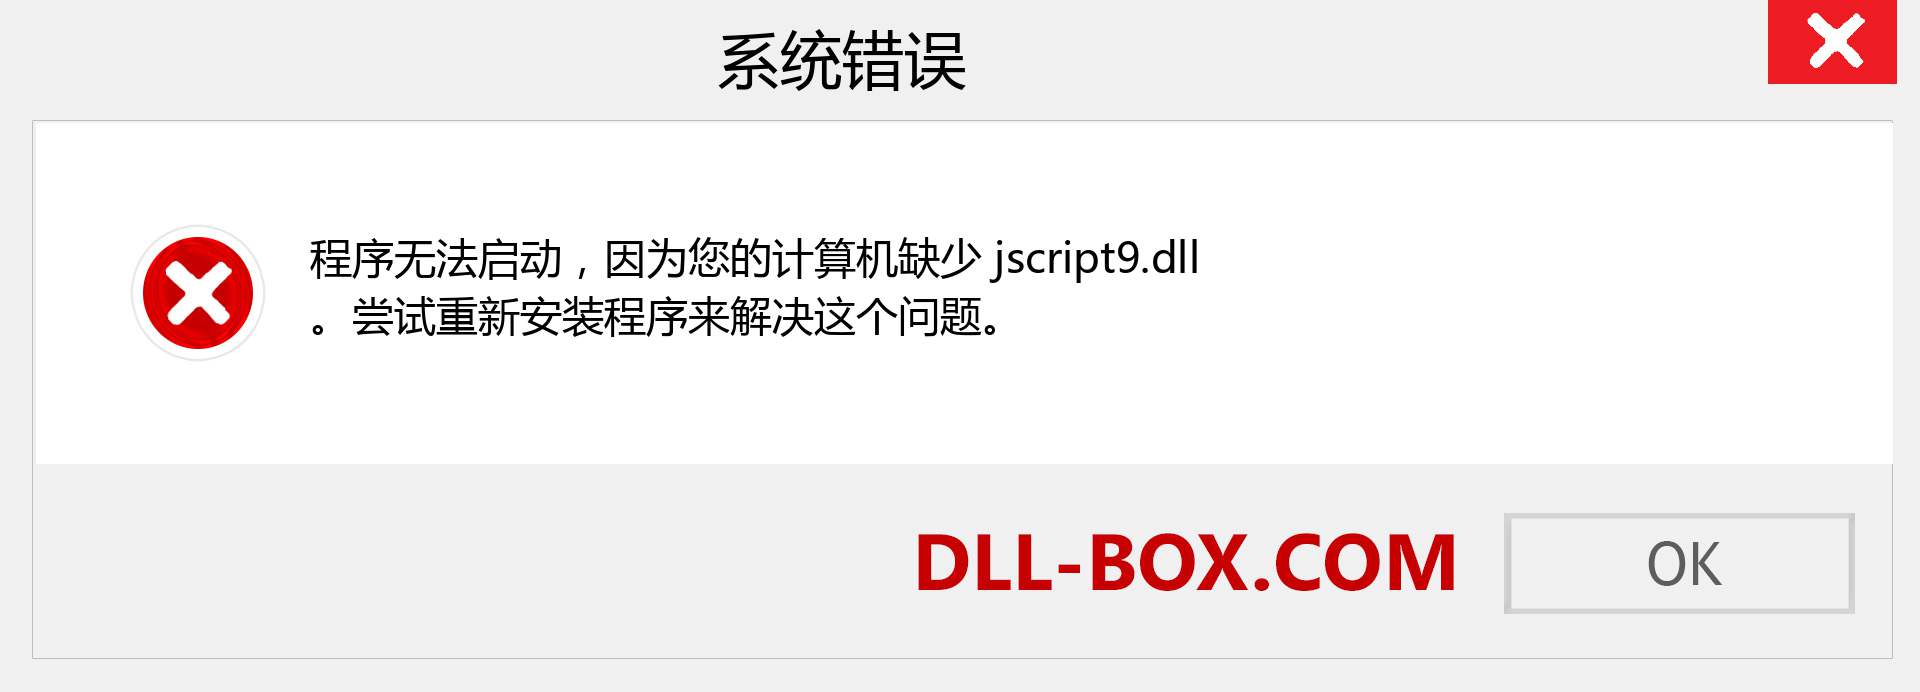 jscript9.dll 文件丢失？。 适用于 Windows 7、8、10 的下载 - 修复 Windows、照片、图像上的 jscript9 dll 丢失错误